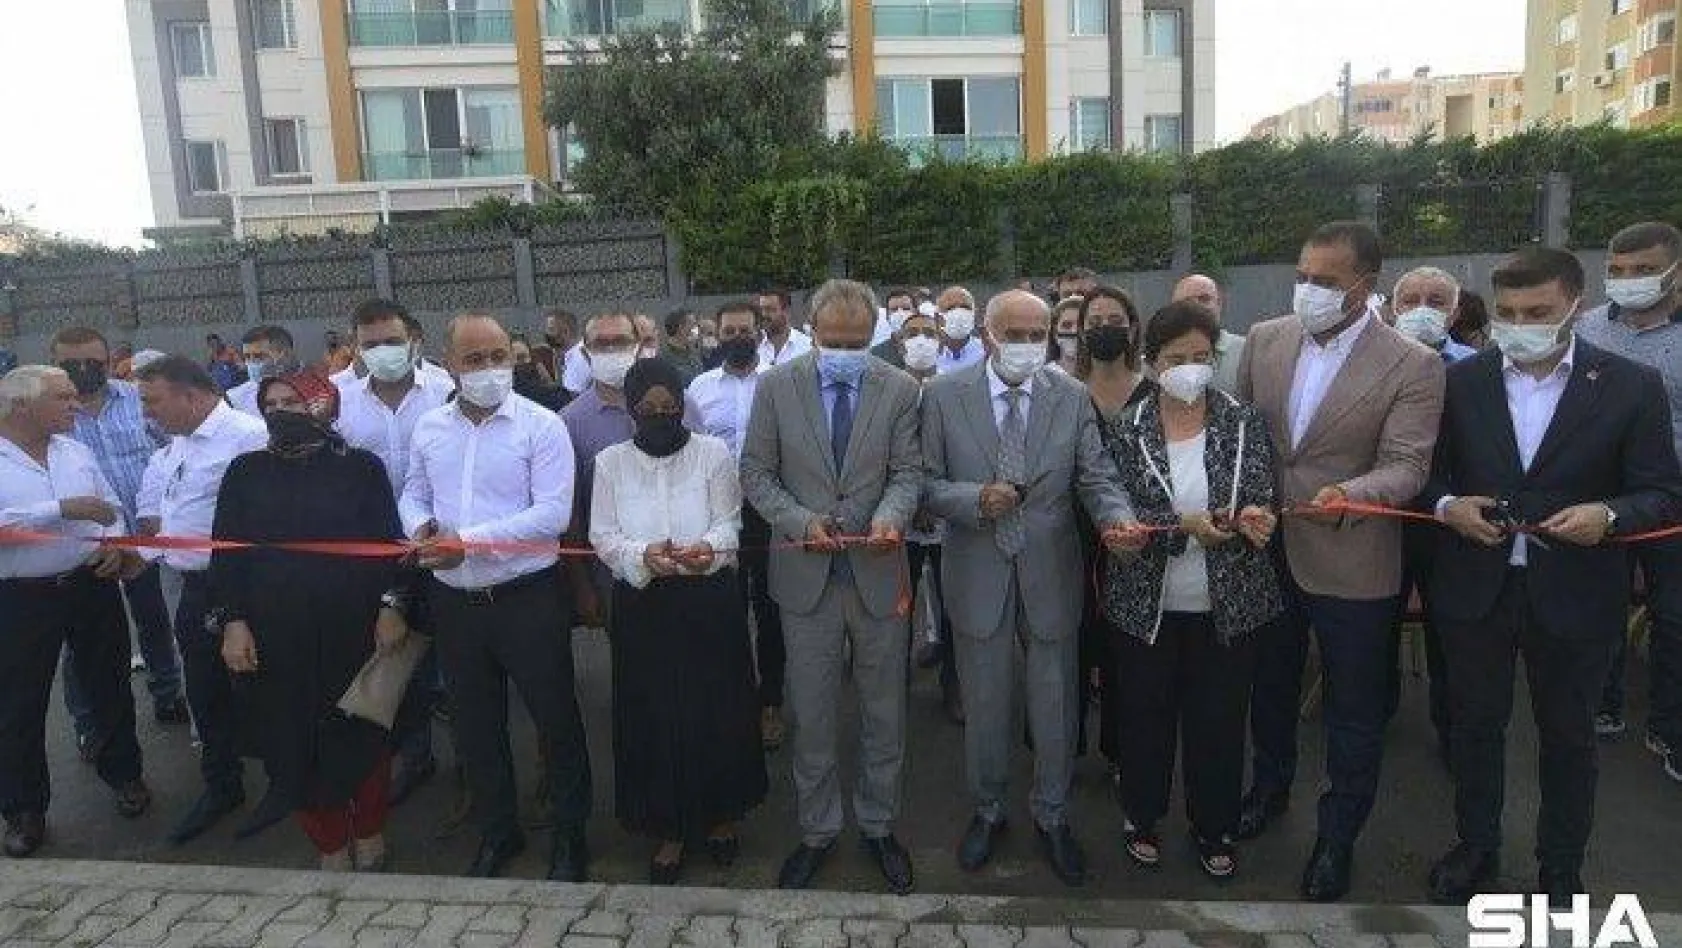 Atatürk Parkı Törenle Hizmete Açıldı